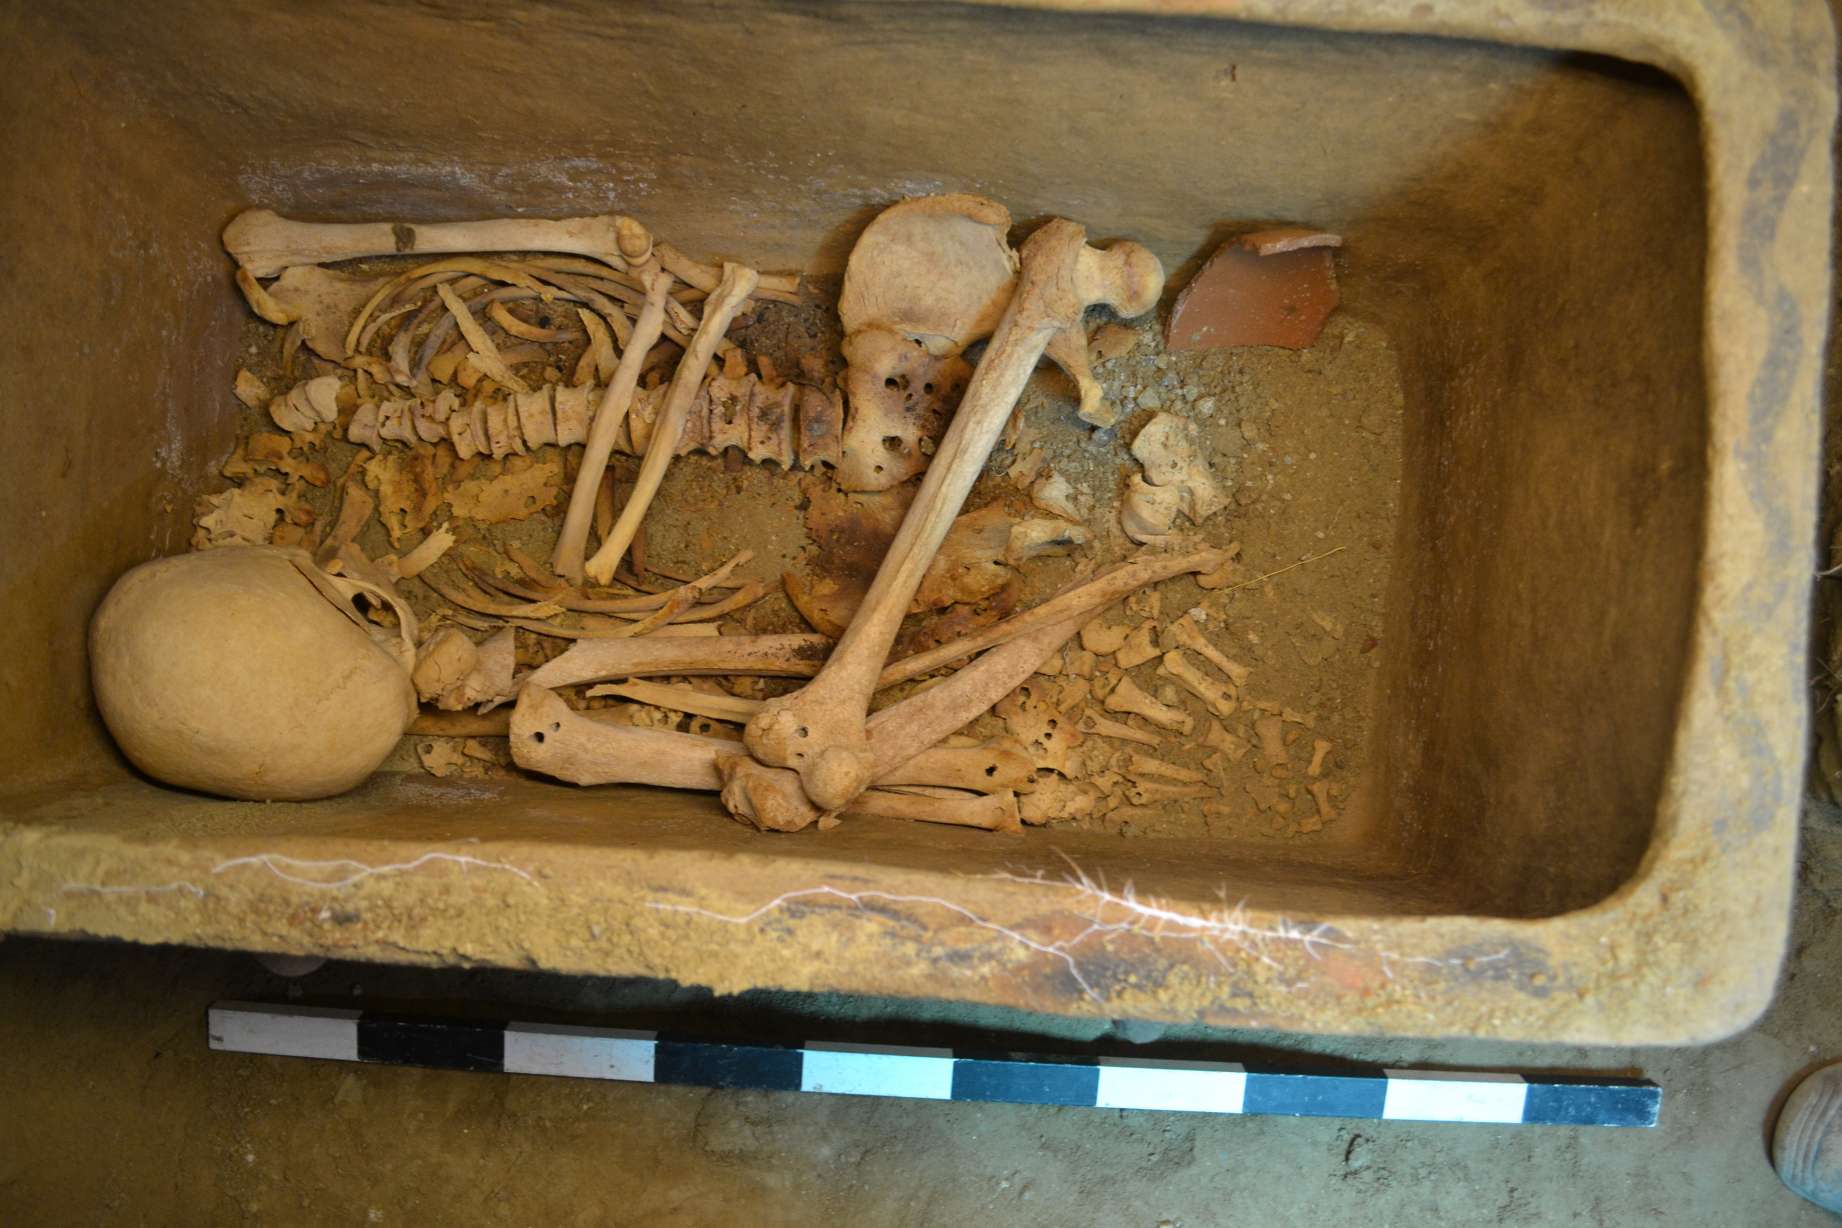 Griekse boer ontdekt onverwachts 3,400 jaar oude grafkamer verborgen onder zijn olijfboomgaard 2